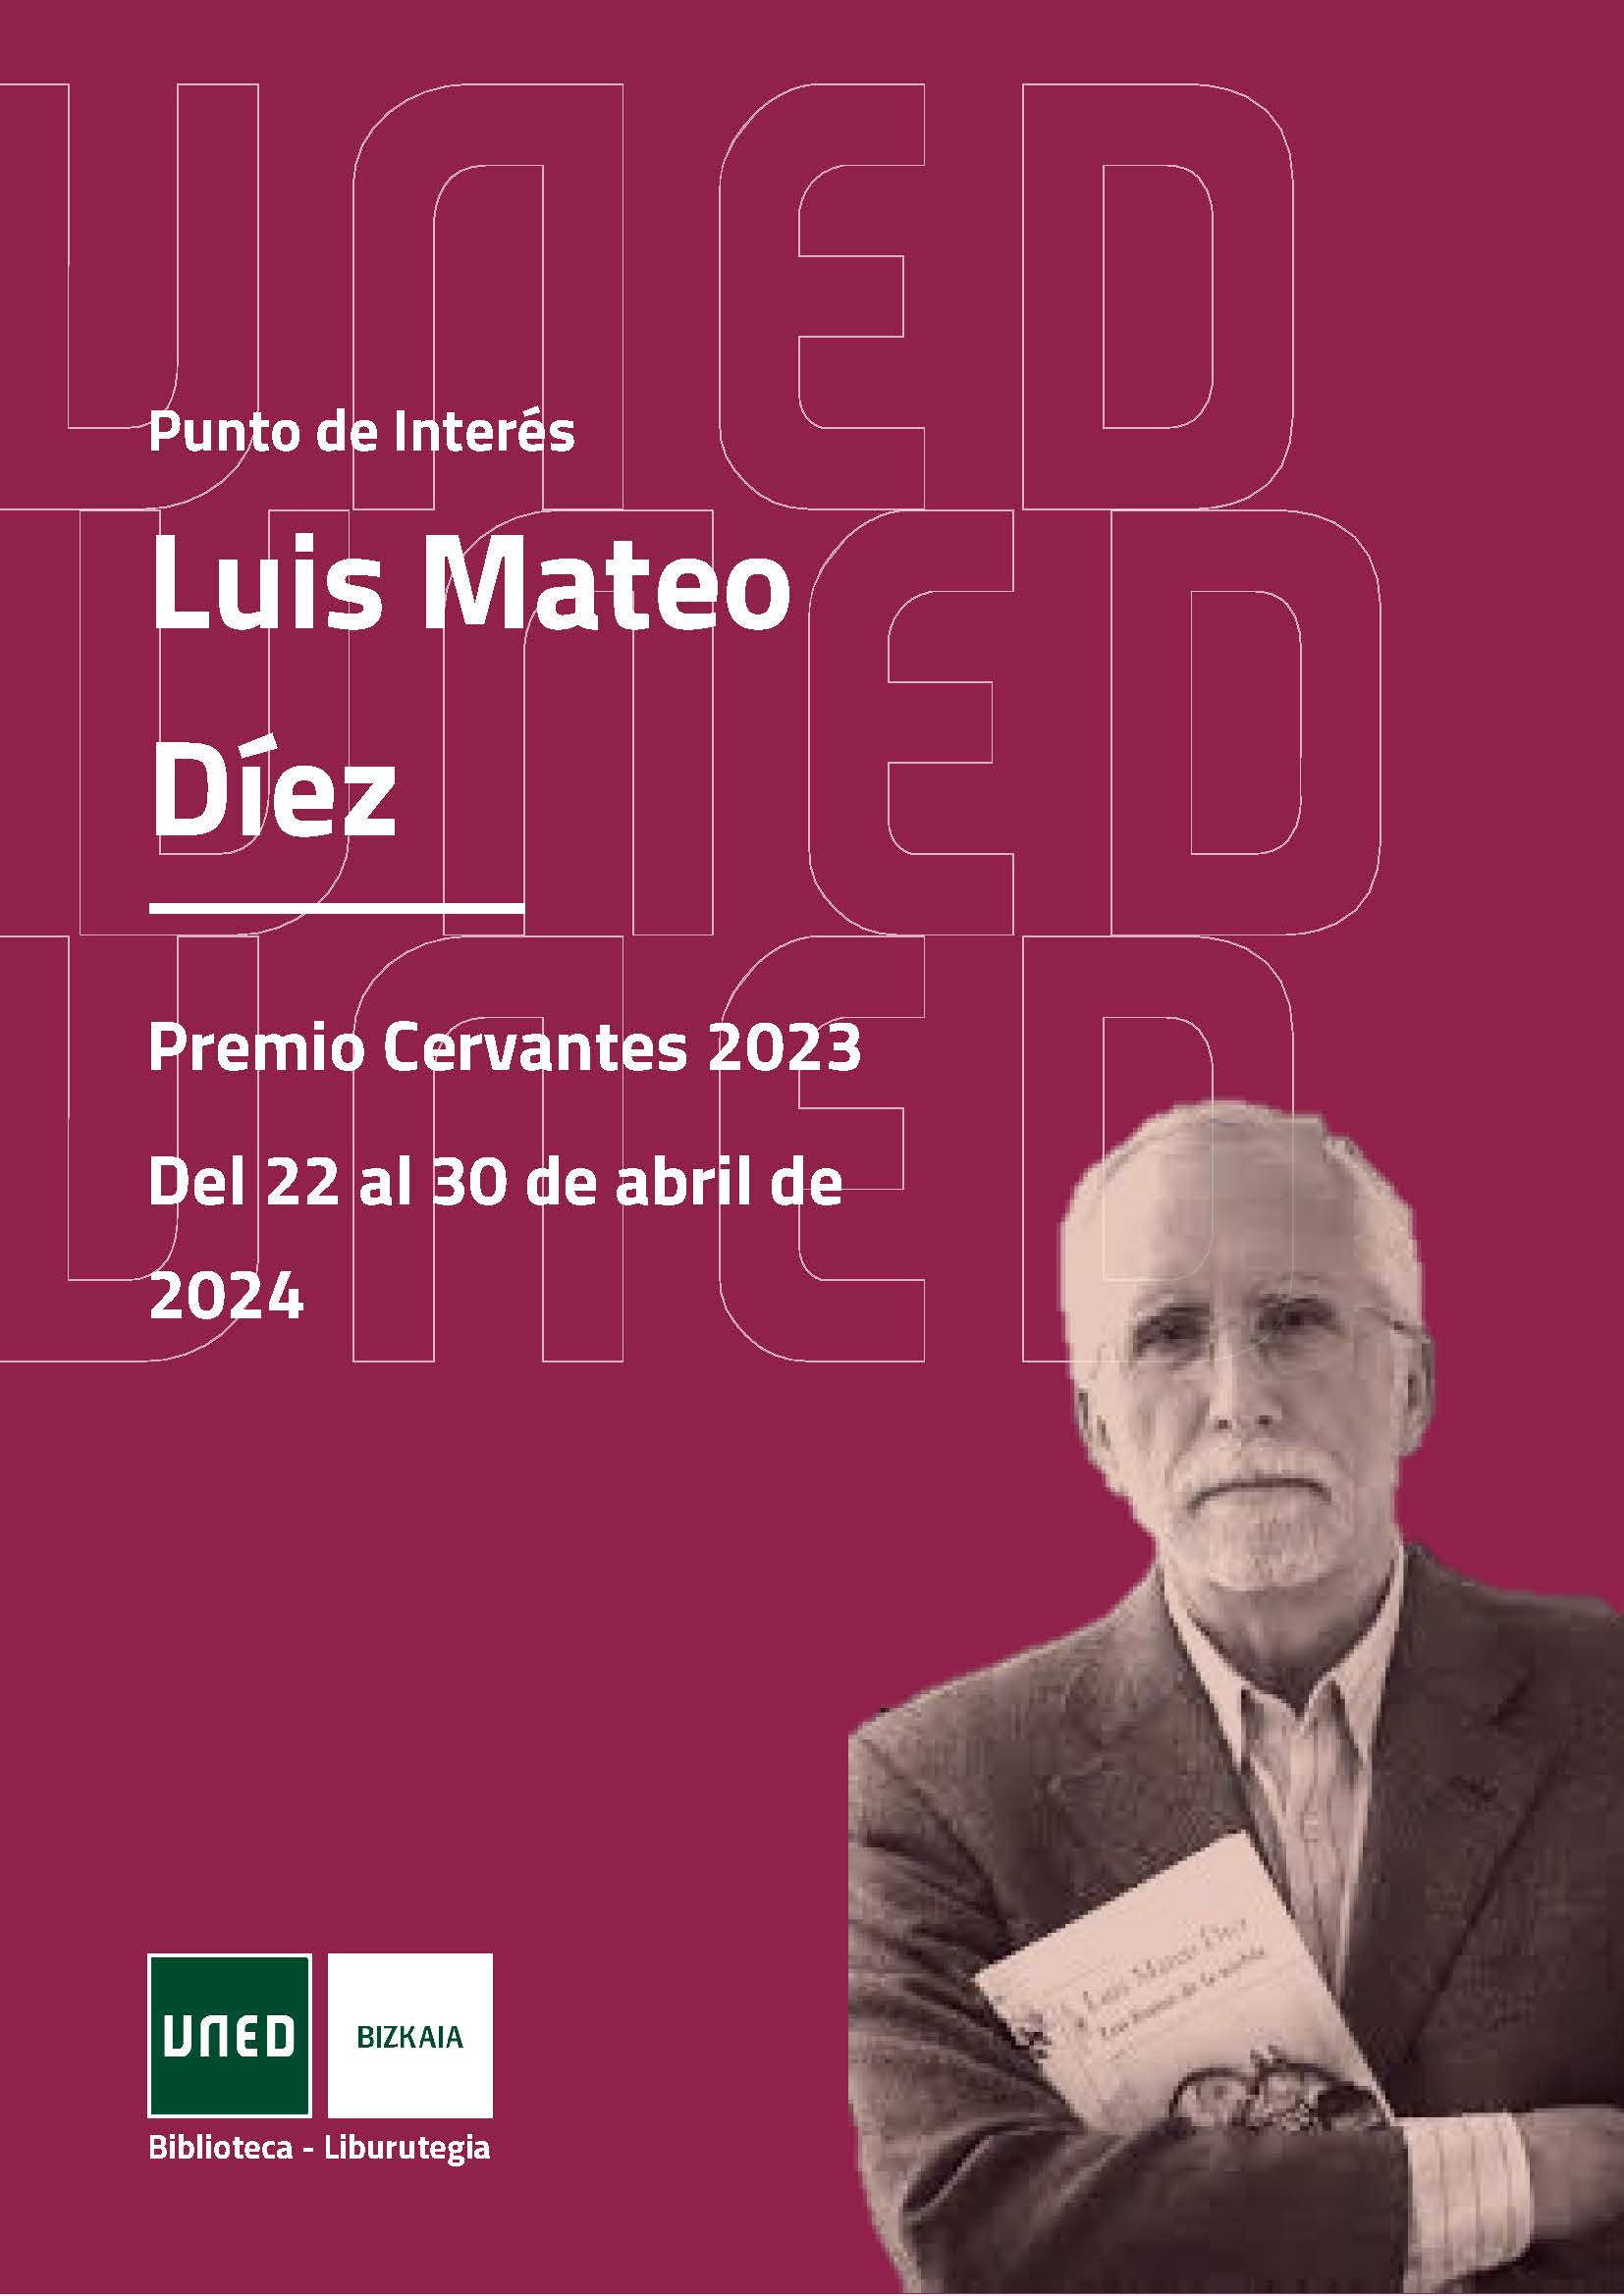 Imagen Dosier Luis Mateo Díez